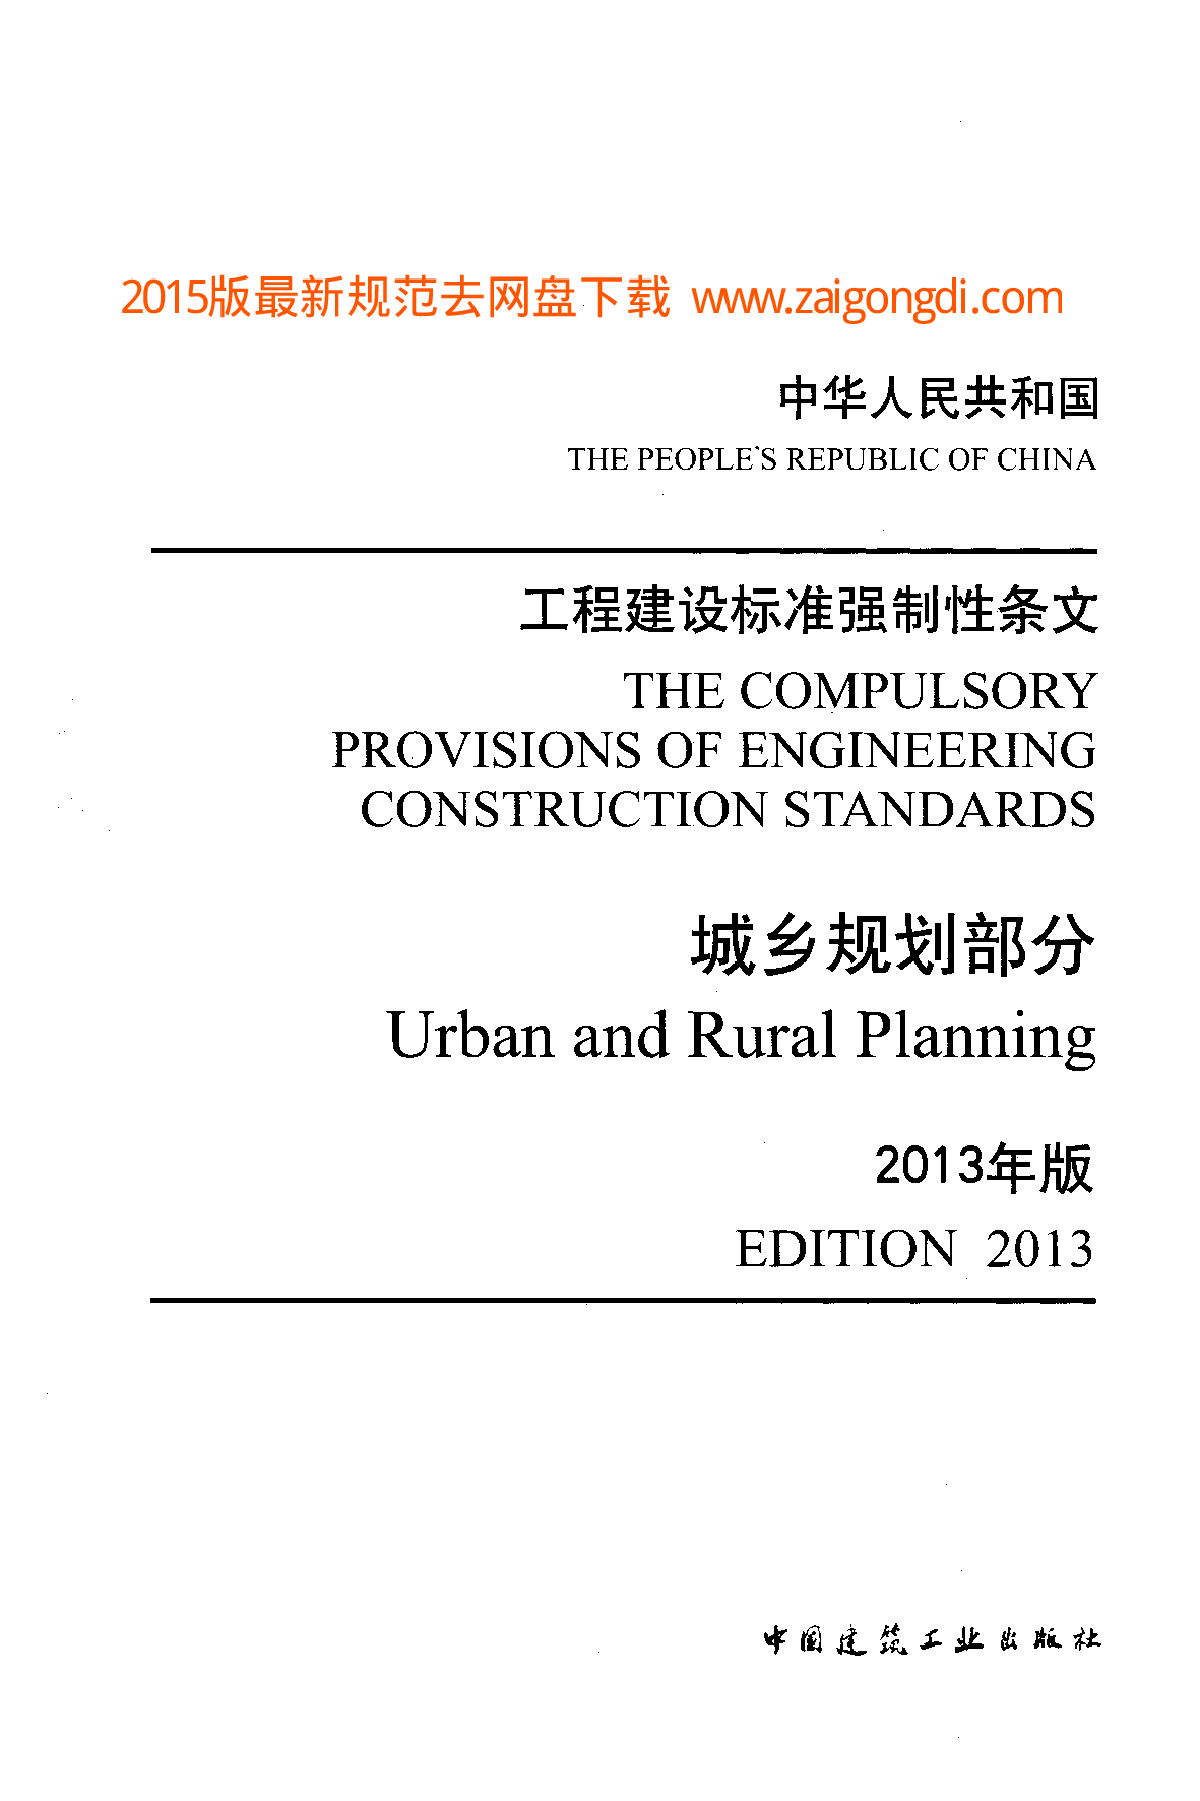 工程建设标准强制性条文-城乡规划部分(2013年版)